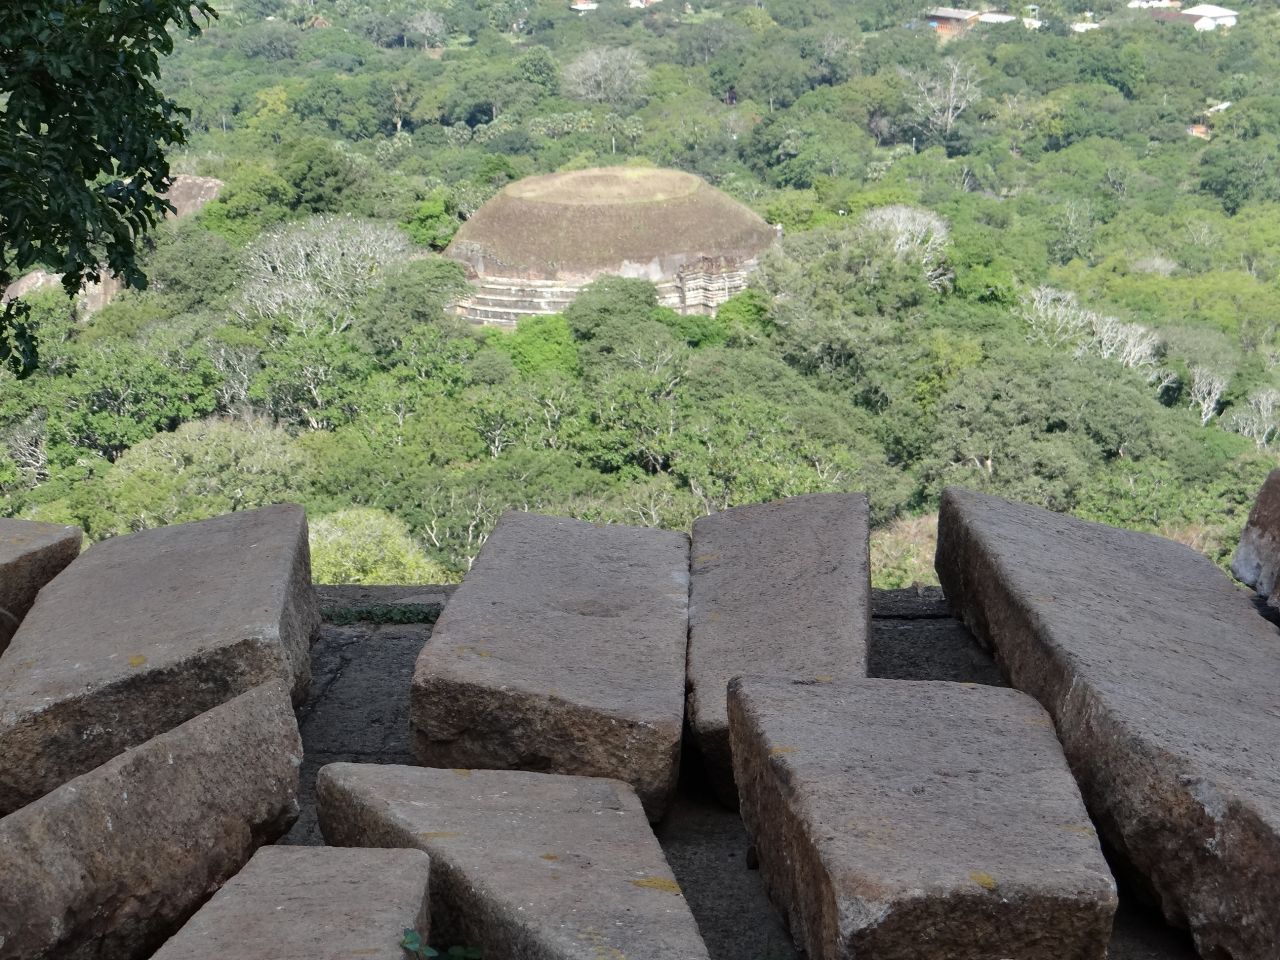 Руины ступы Кантакачетья, построенной из кирпича во II в. до н.э. и достигавшей в высоту 30 м, а в диаметре 130 м. Сейчас высота открытой после раскопок ступы около 12 м - Шри-Ланка 2017. Часть 3.